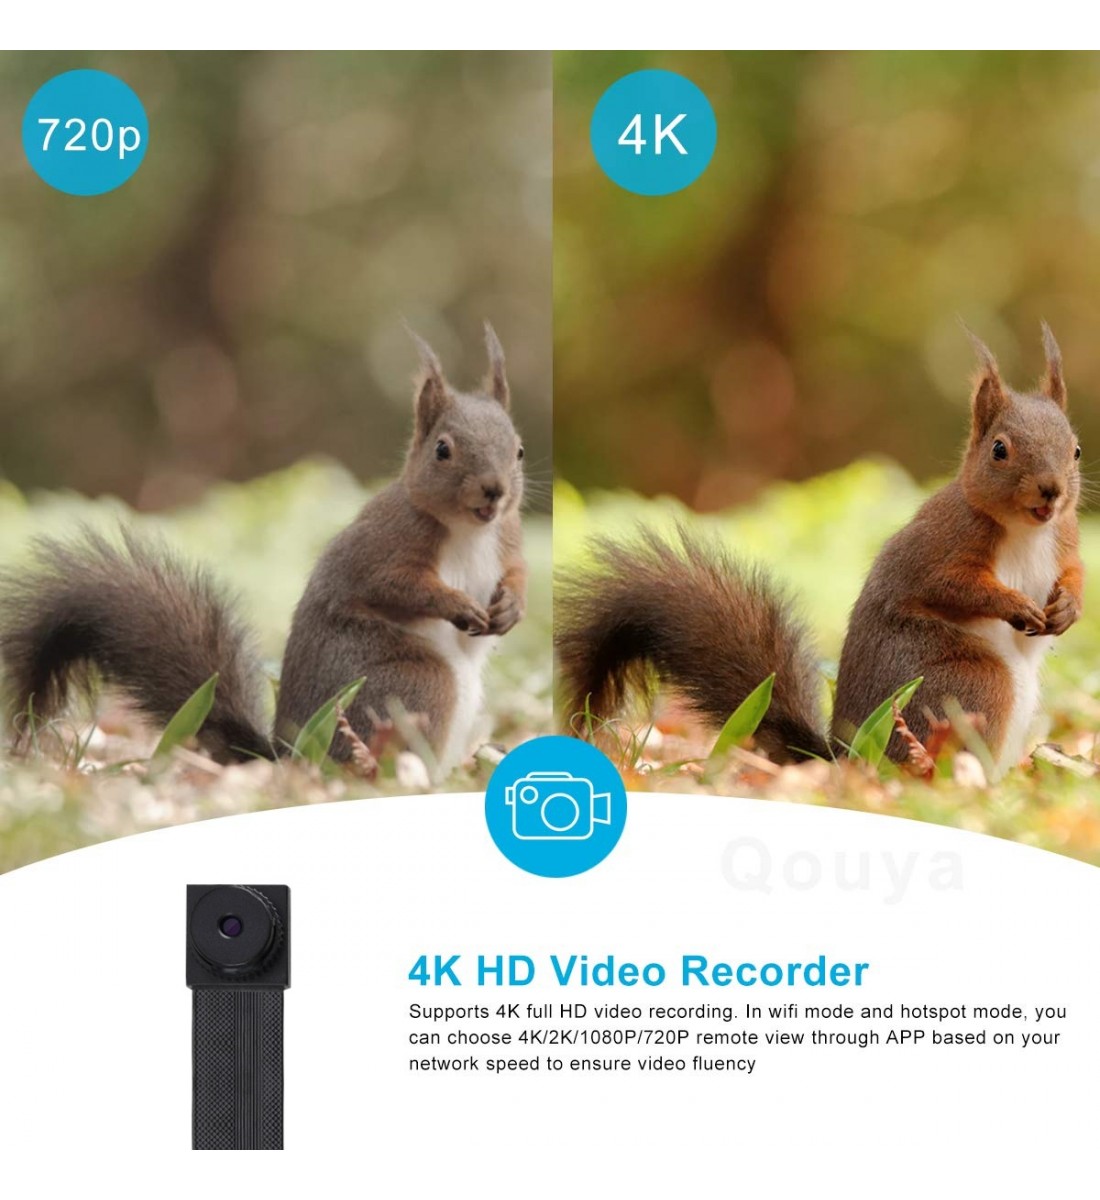 Comercio al por mayor 4K Ultra HD WiFi Cámara espía oculta Versión mejorada  Mini cámara Detección de movimiento inalámbrica Niñera Cam hasta 256GB  Video de seguridad Cámara de visión remota Monitor Baby